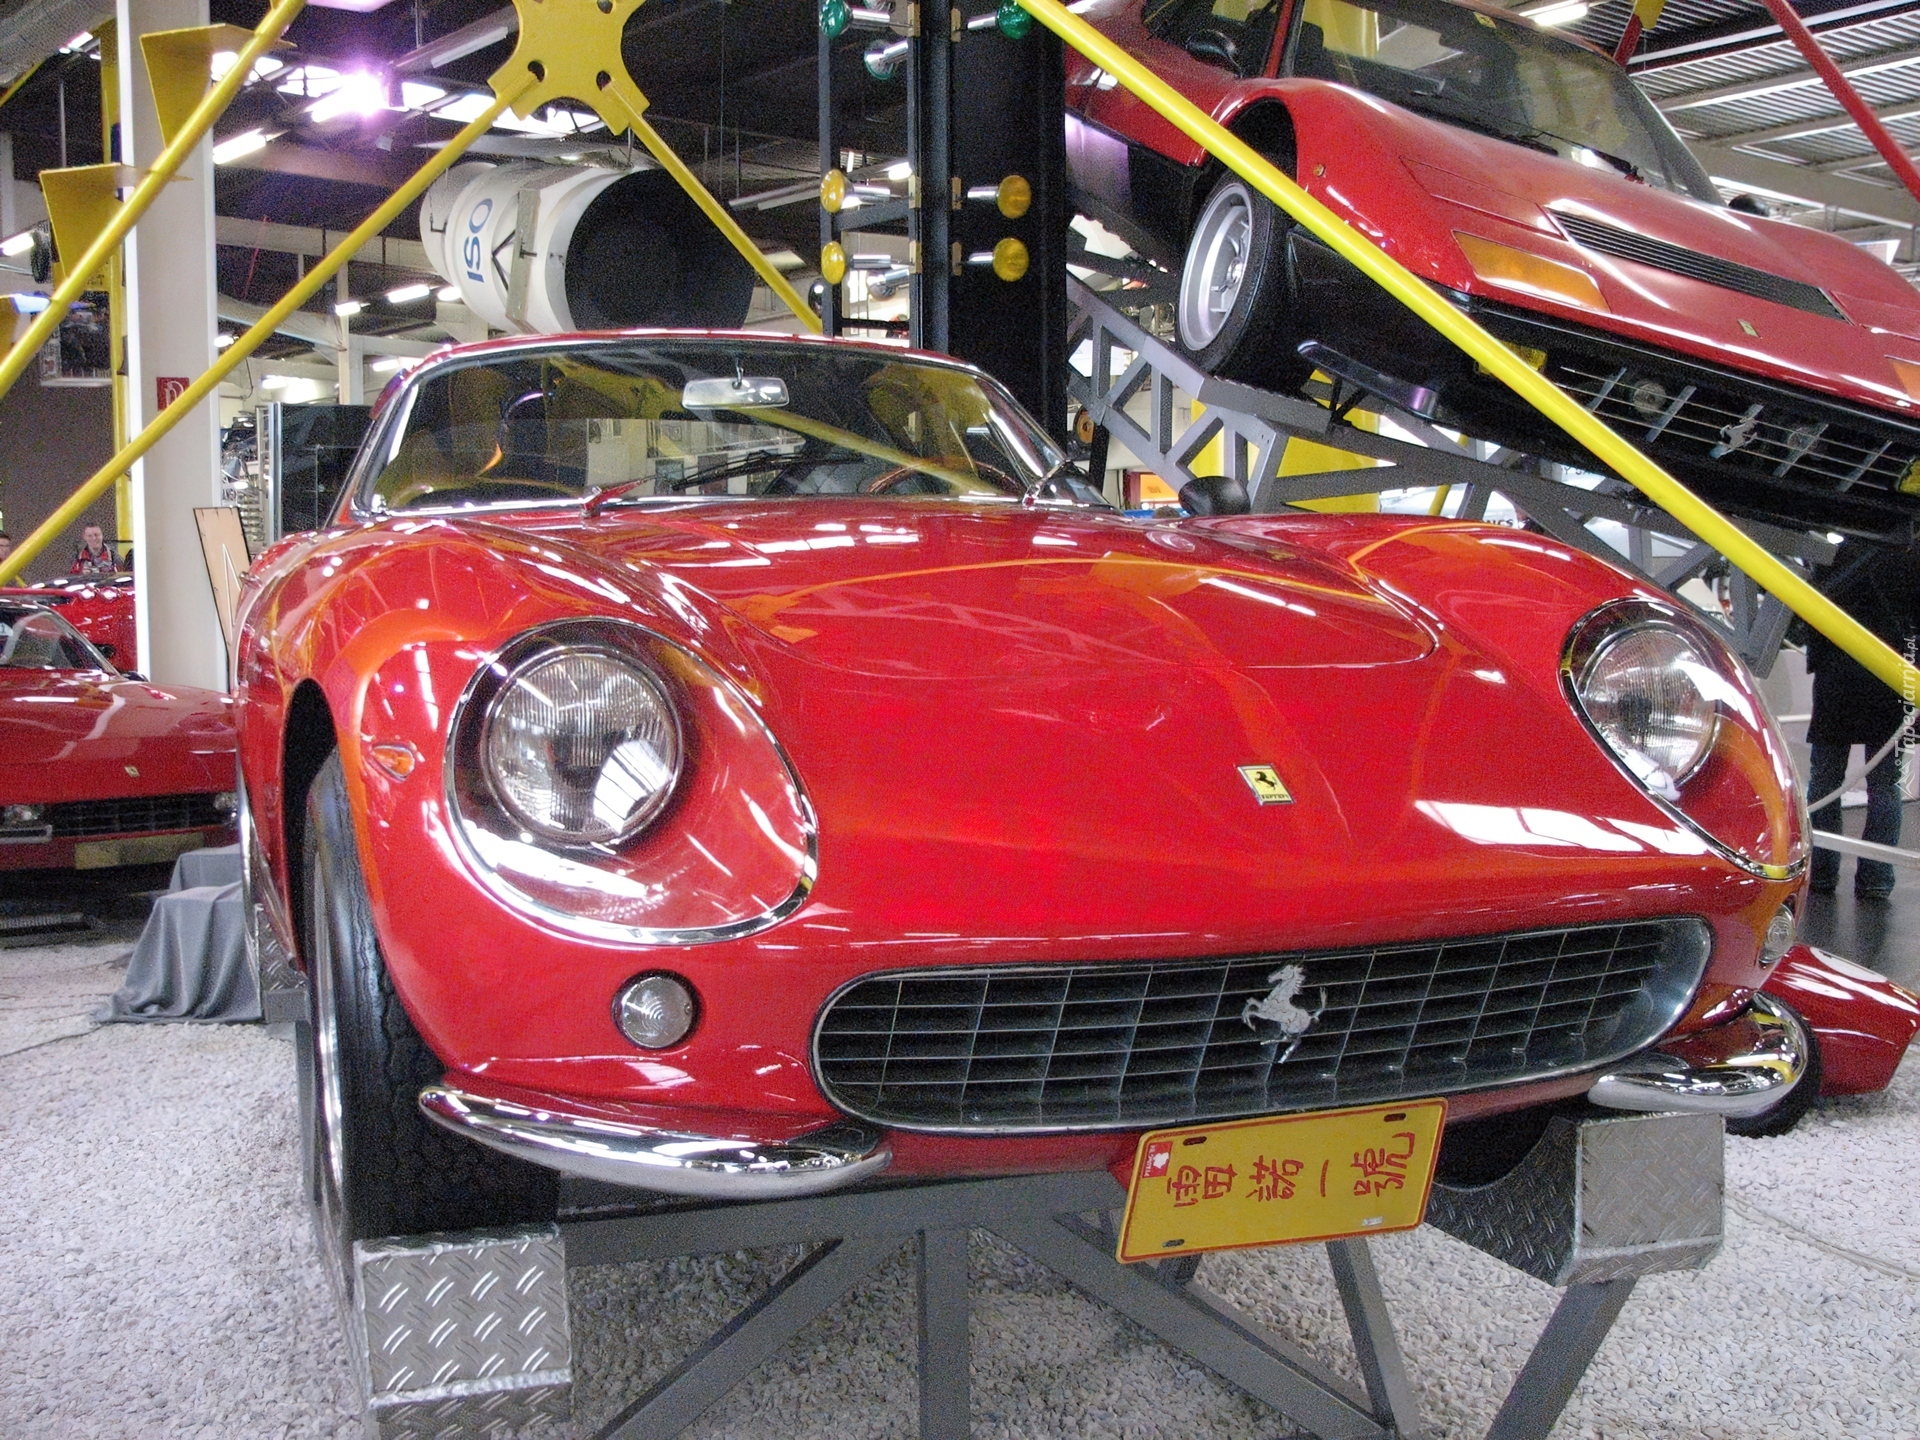 Muzeum, Ferrari 275